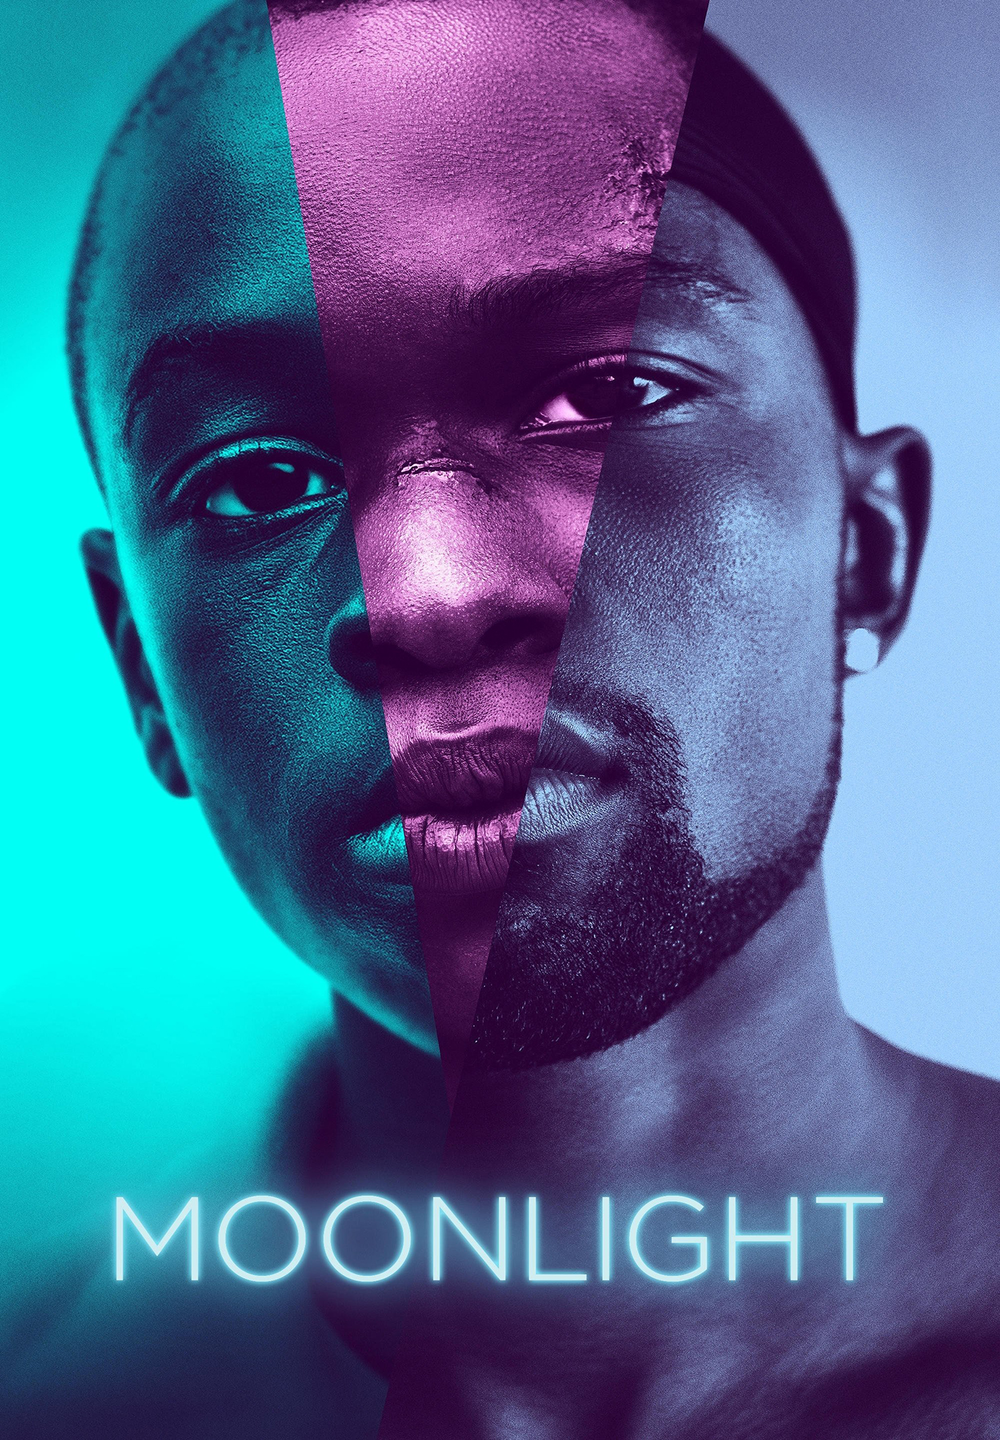 Moonlight [HD] (2017)